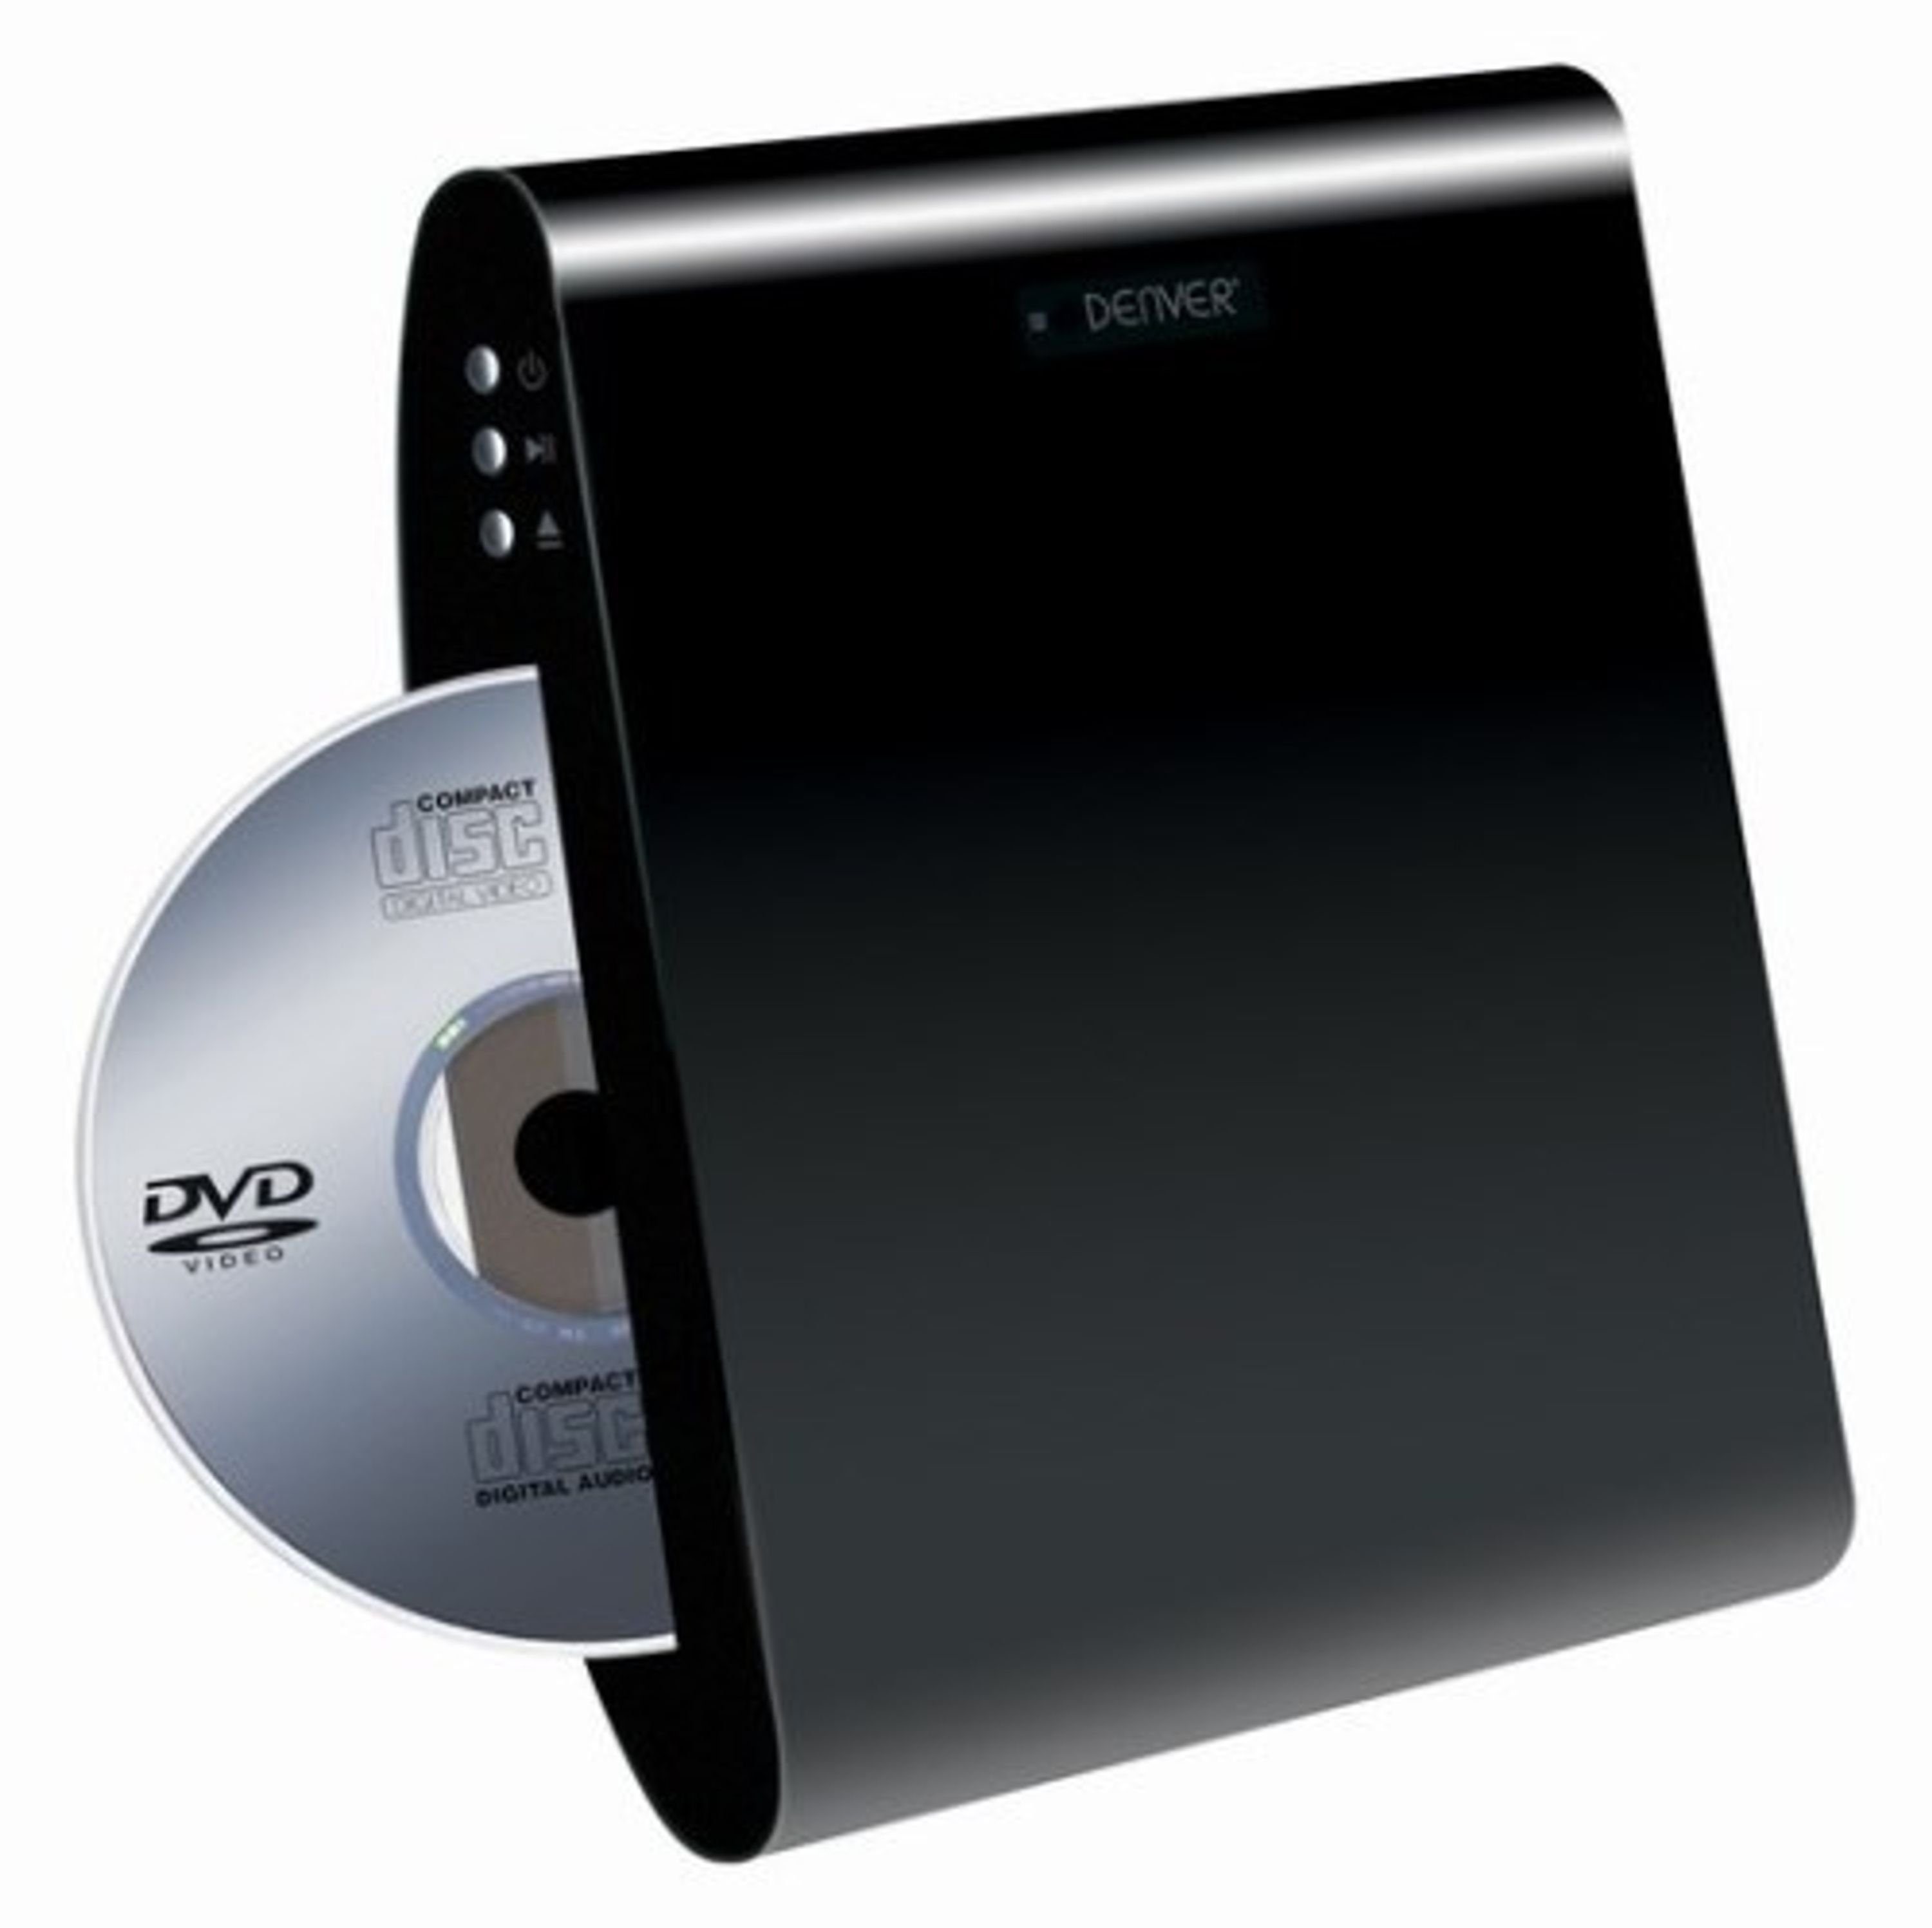 Denver DWM 100 black DVD-Player (HDMI, wandmontage möglich)